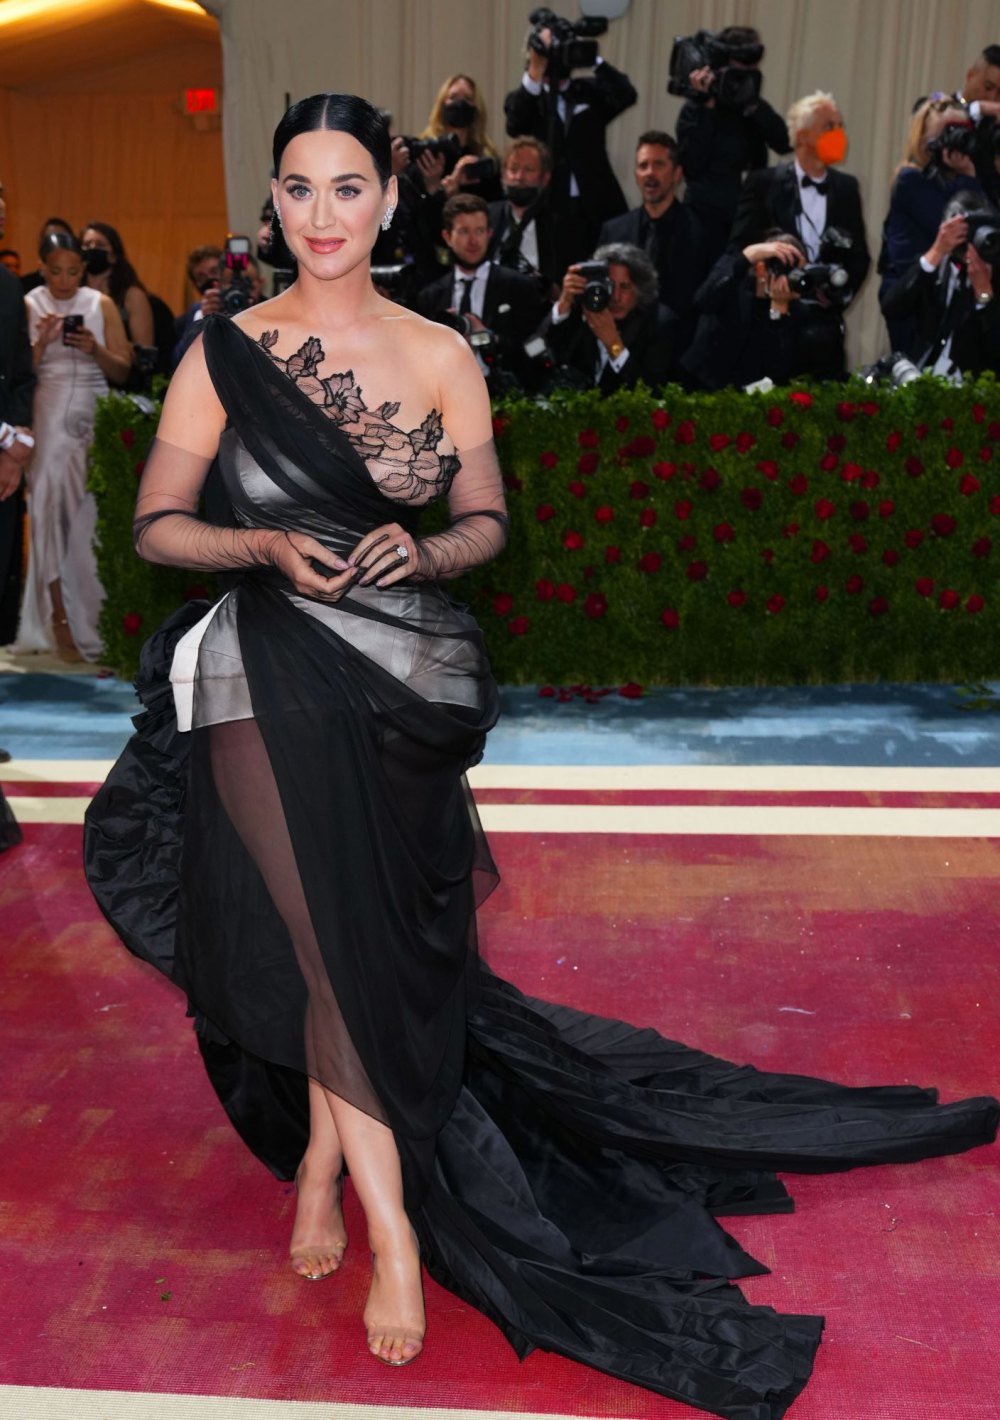 Katy Perry fake met gala image goes viral